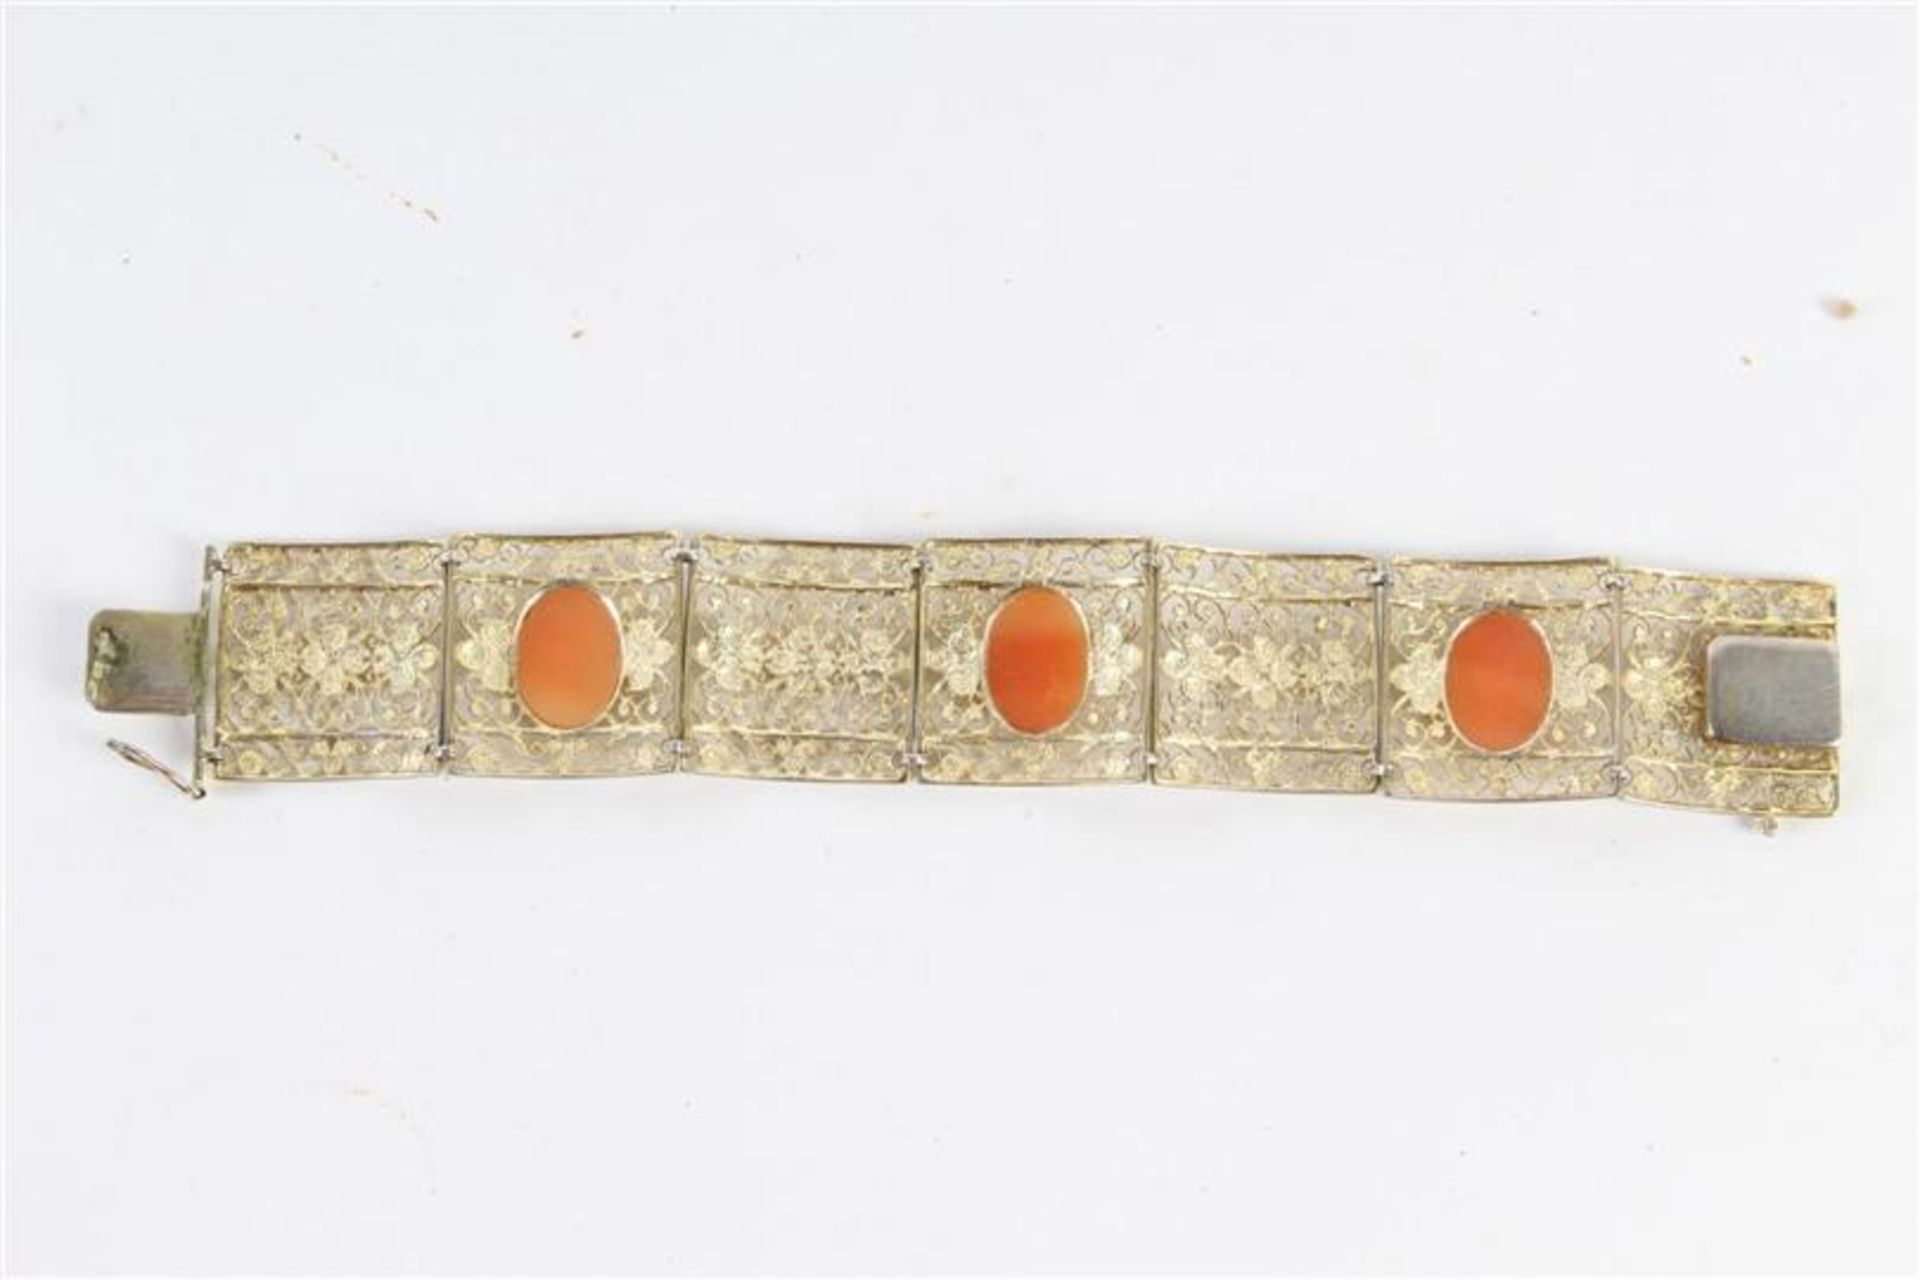 Filigrain zilveren armband met cameeën. Gewicht: 23.9 g. - Bild 2 aus 2